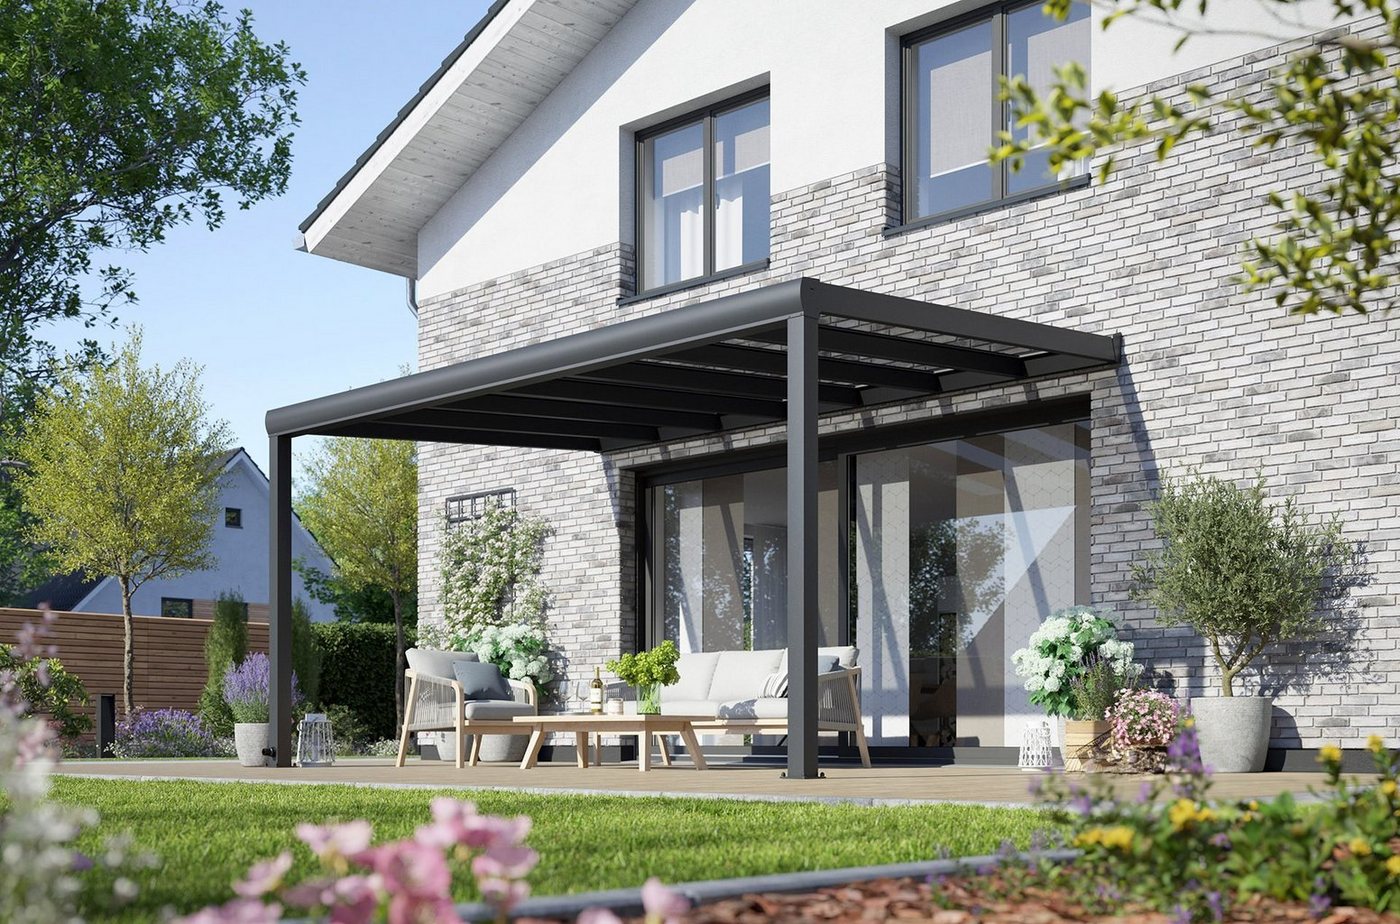 Rexin Terrassendach REXOpremium – hochwertiges Aluminium Terrassendach 4m x 3m, BxT: 406x300 cm, Bedachung VSG-Glas klar oder VSG-Glas grau, mit 4mm starken Profilen, Terrassenüberdachung, Vordach von Rexin